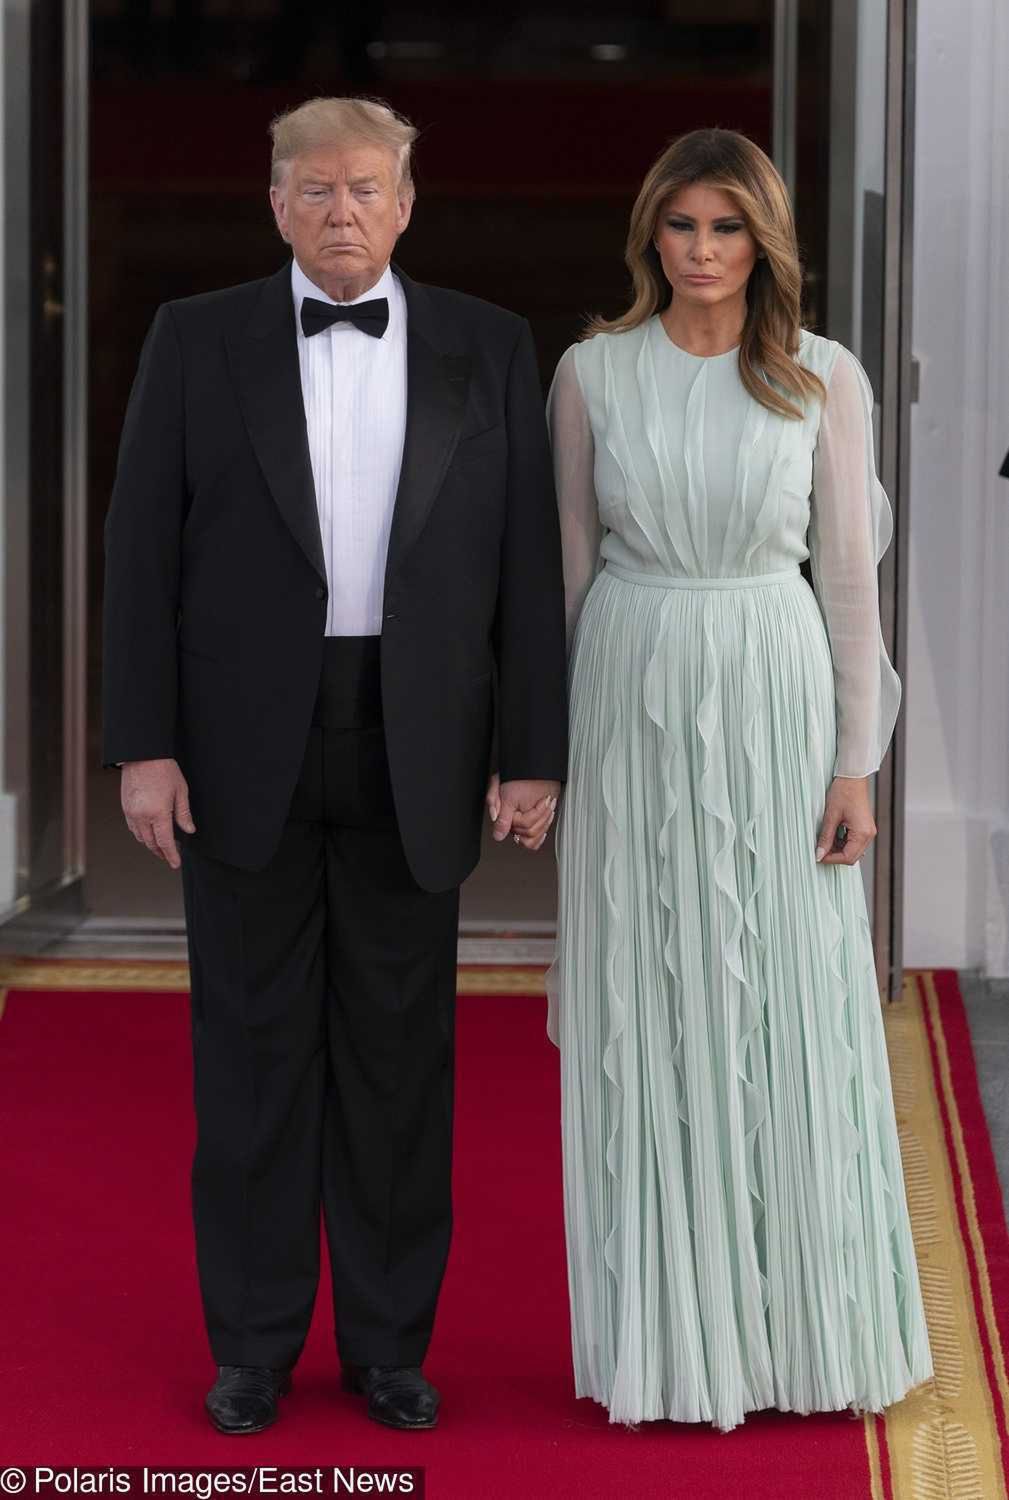 Melania Trump - biała kreacja na kolację w Białym Domu